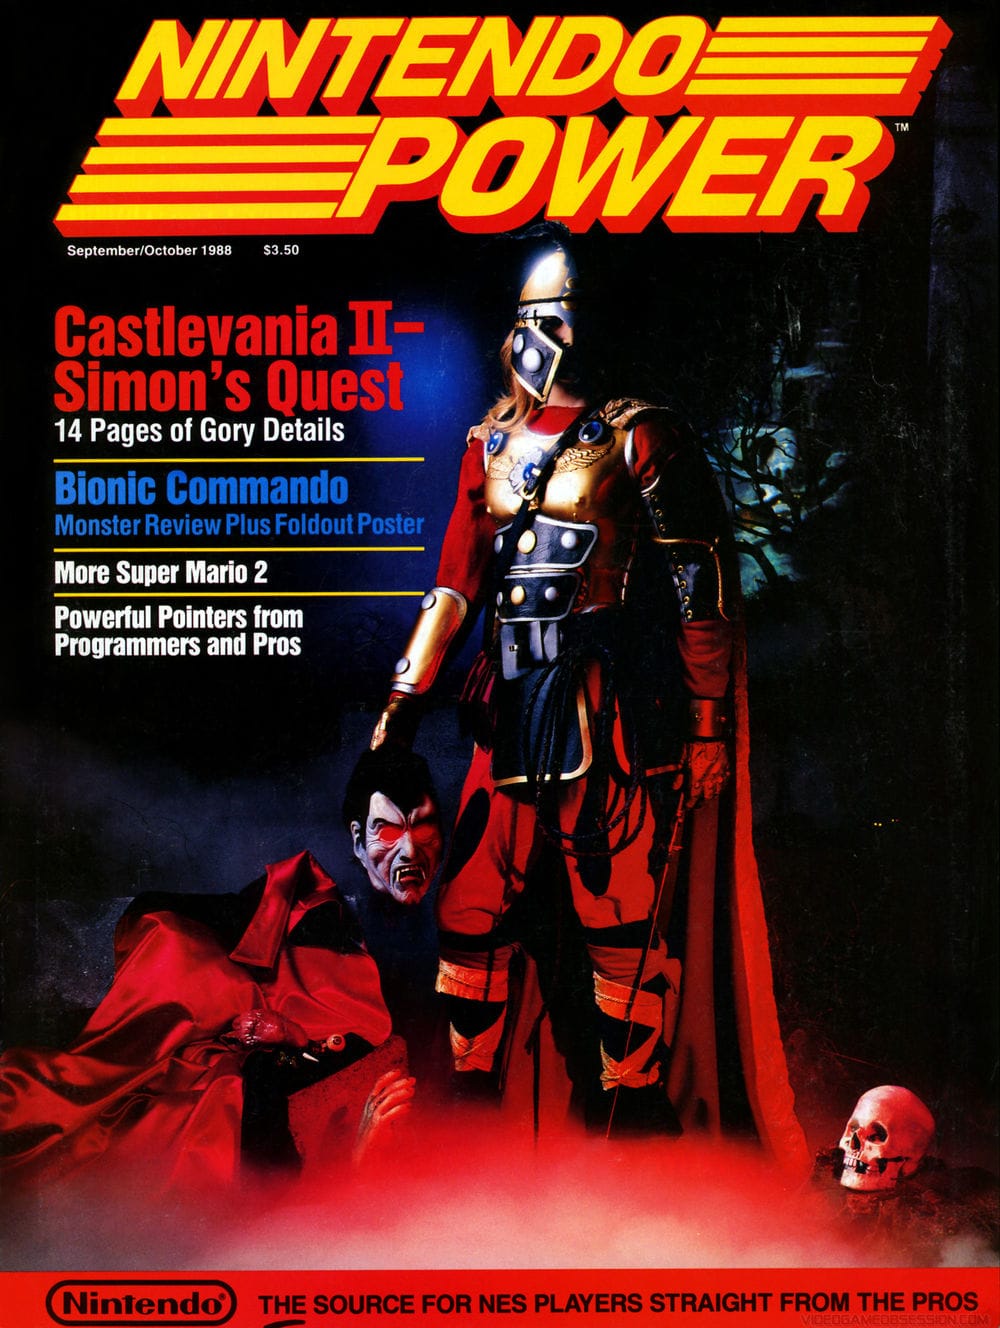 Nintendo Power September/October 1988 cover